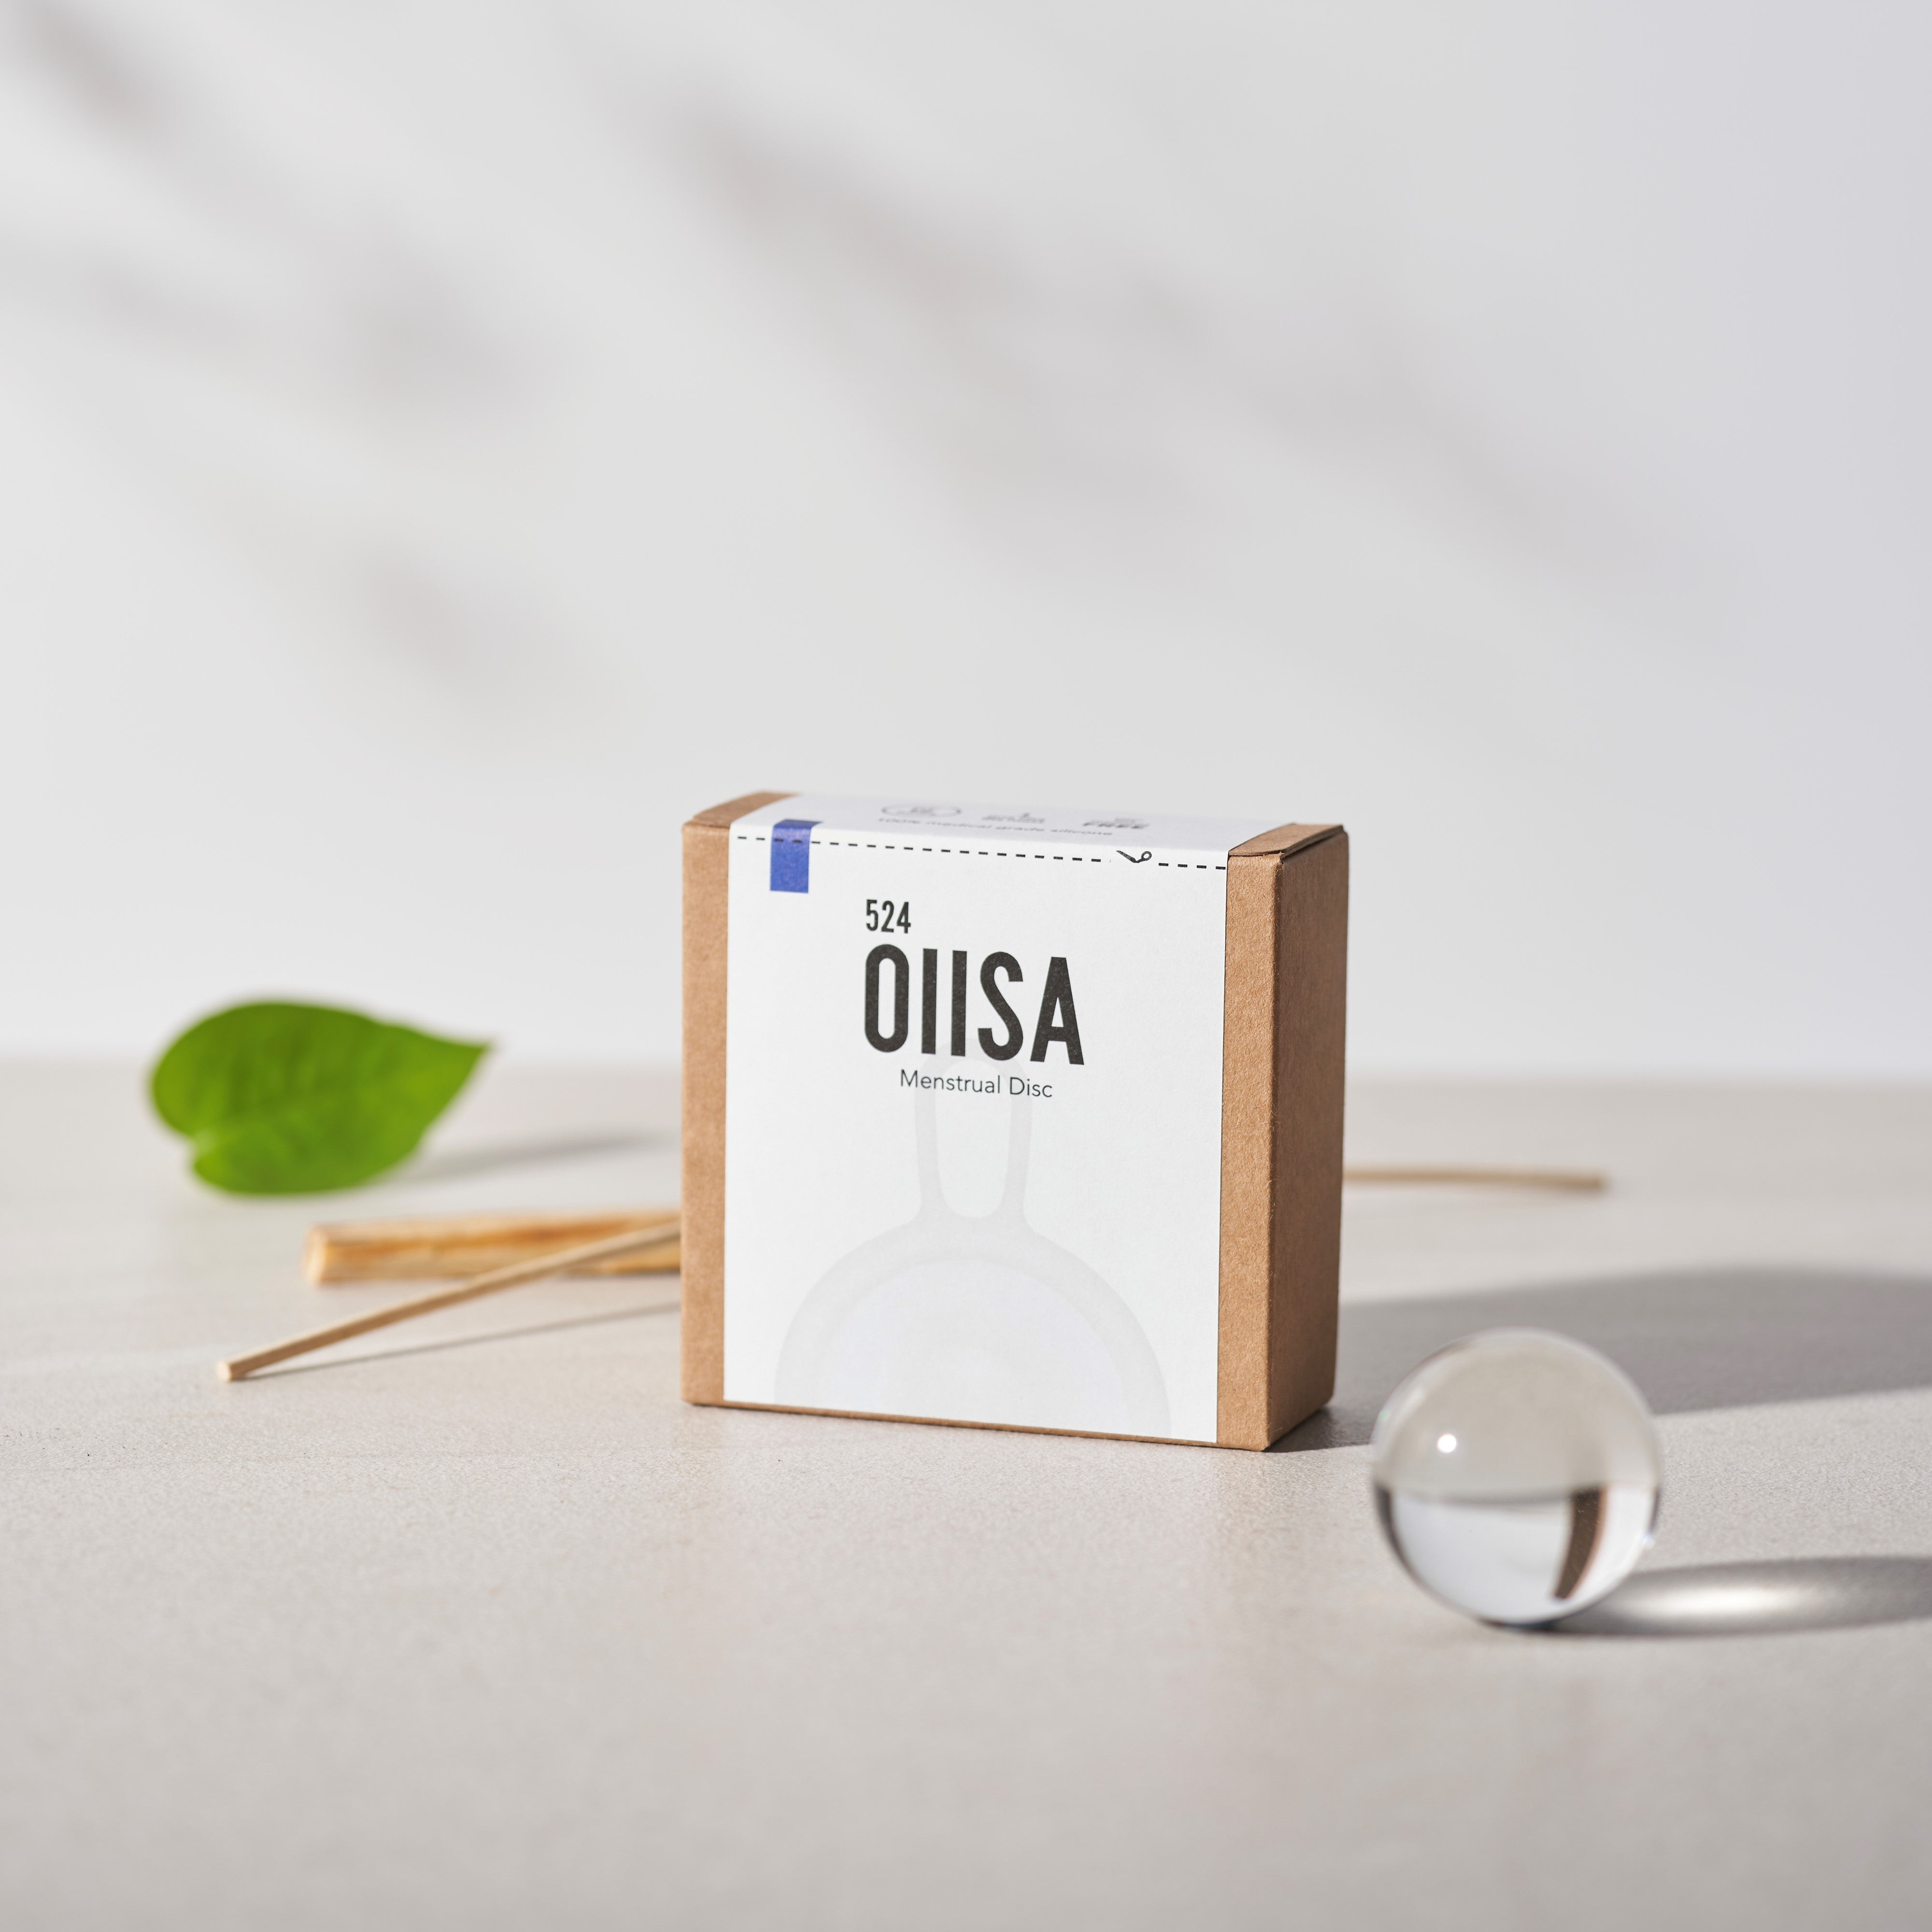 生理の不快感を忘れる「OIISA 524ディスク」：使い方簡単・最長12時間 